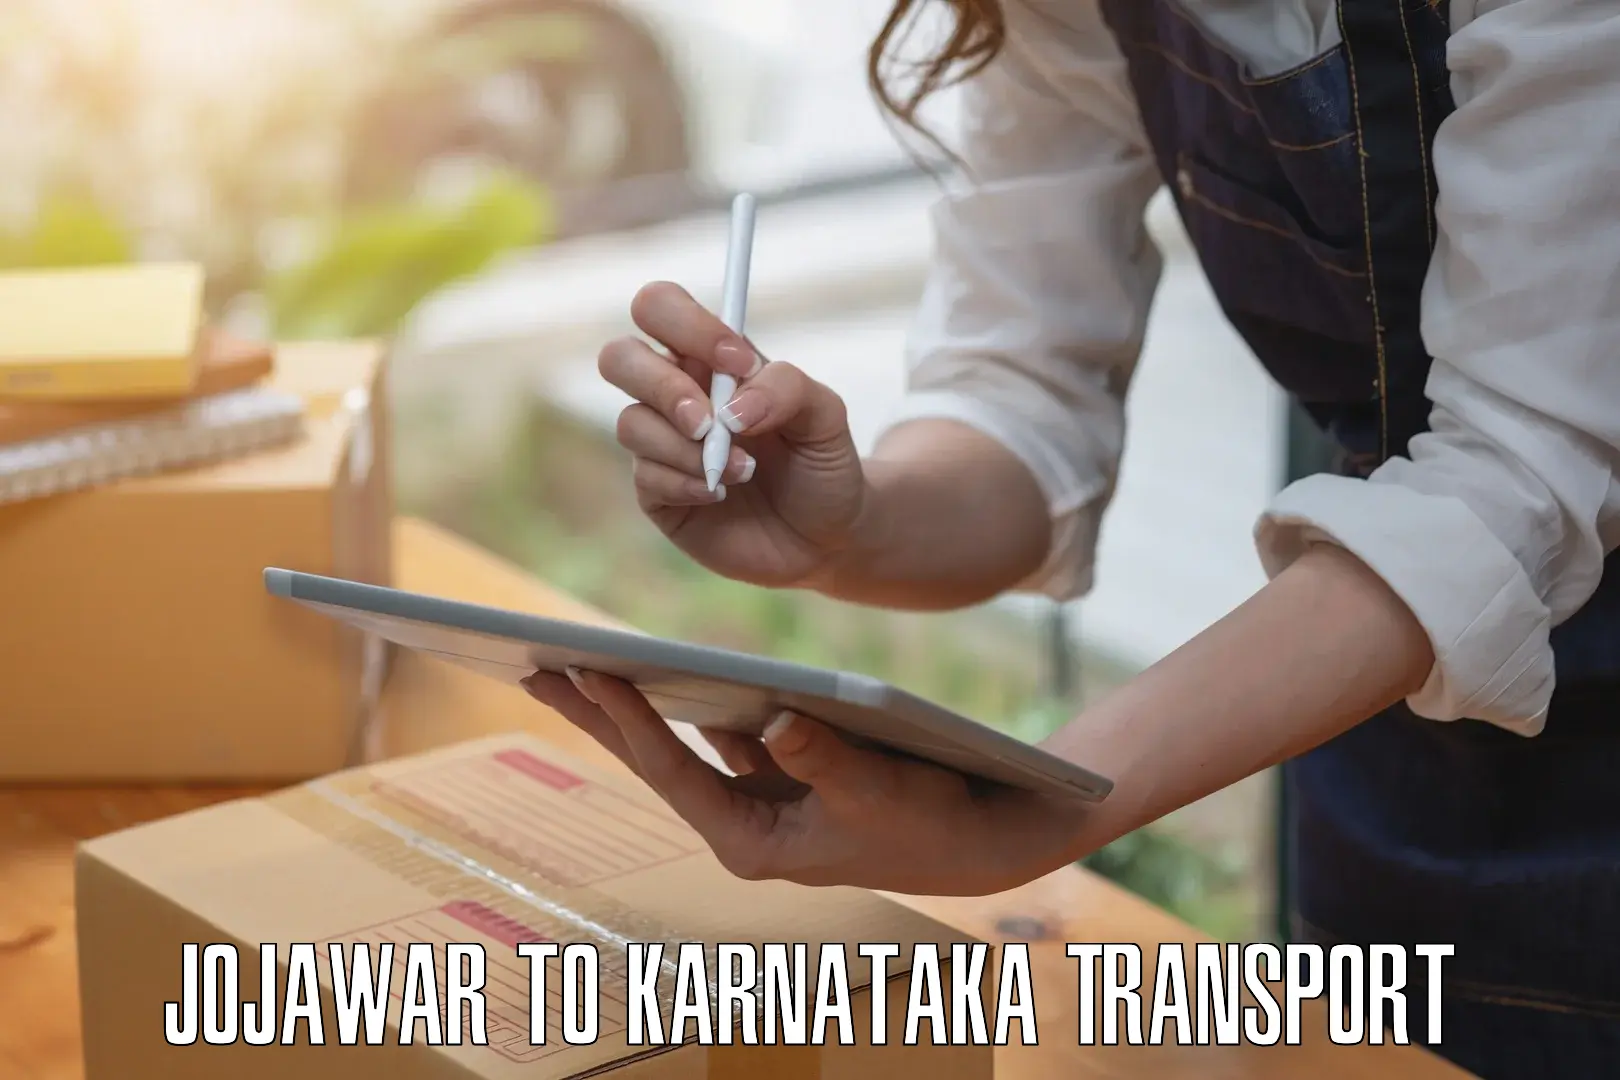 Lorry transport service Jojawar to Bangalore